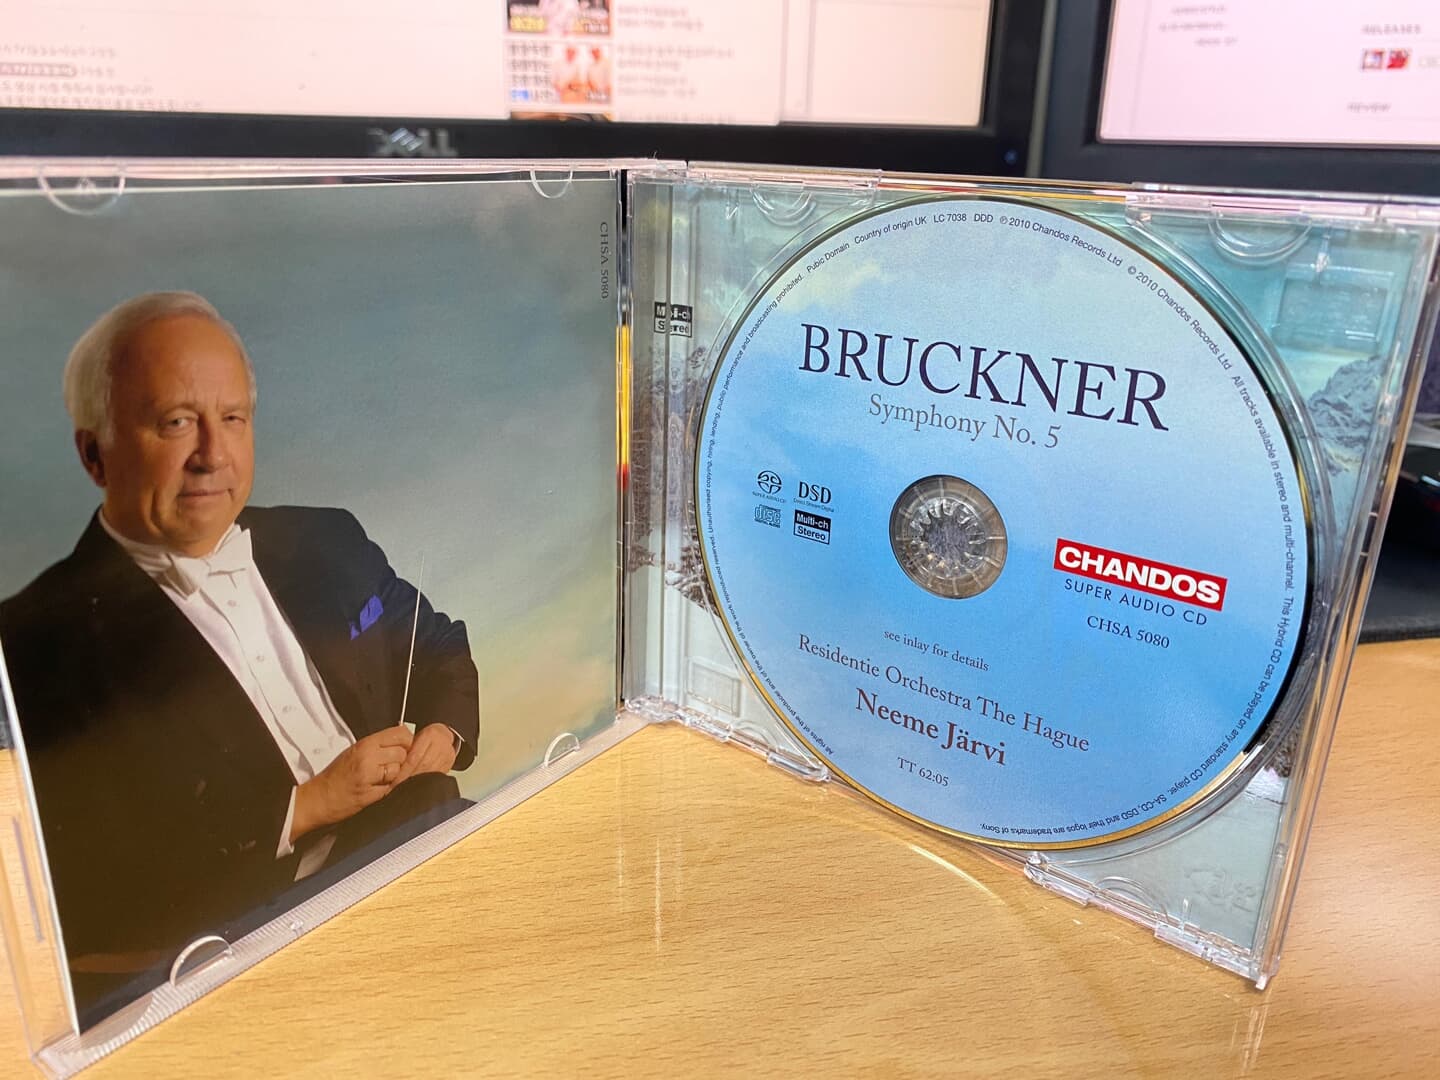 네메 예르비 - Neeme Jarvi - Bruckner Symphony No.5 [SACD] [E.U발매]